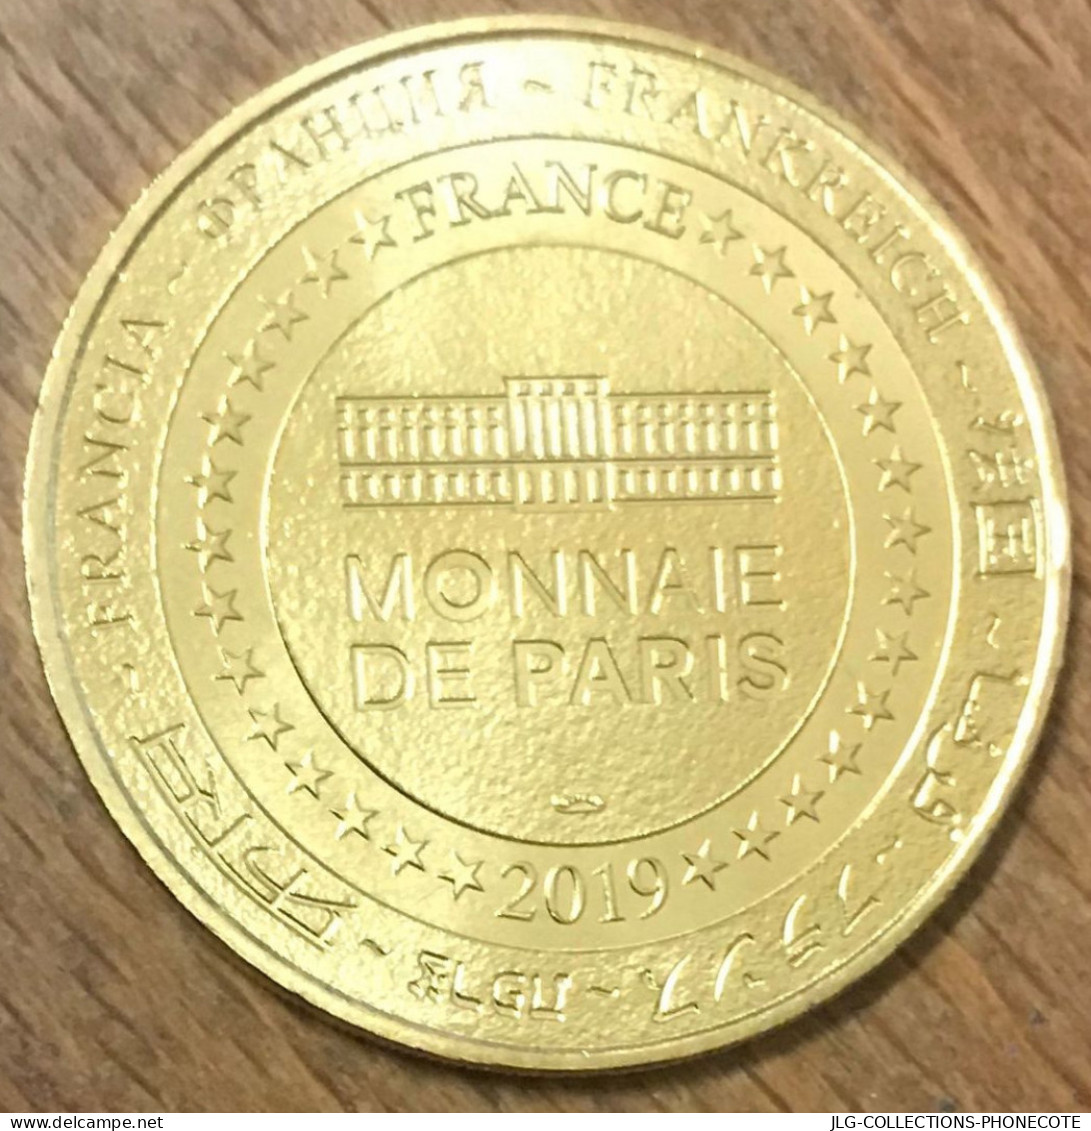 02 CLOVIS ET LE VASE DE SOISSONS MDP 2019 MÉDAILLE SOUVENIR MONNAIE DE PARIS JETON TOURISTIQUE TOKENS MEDALS COINS - 2019